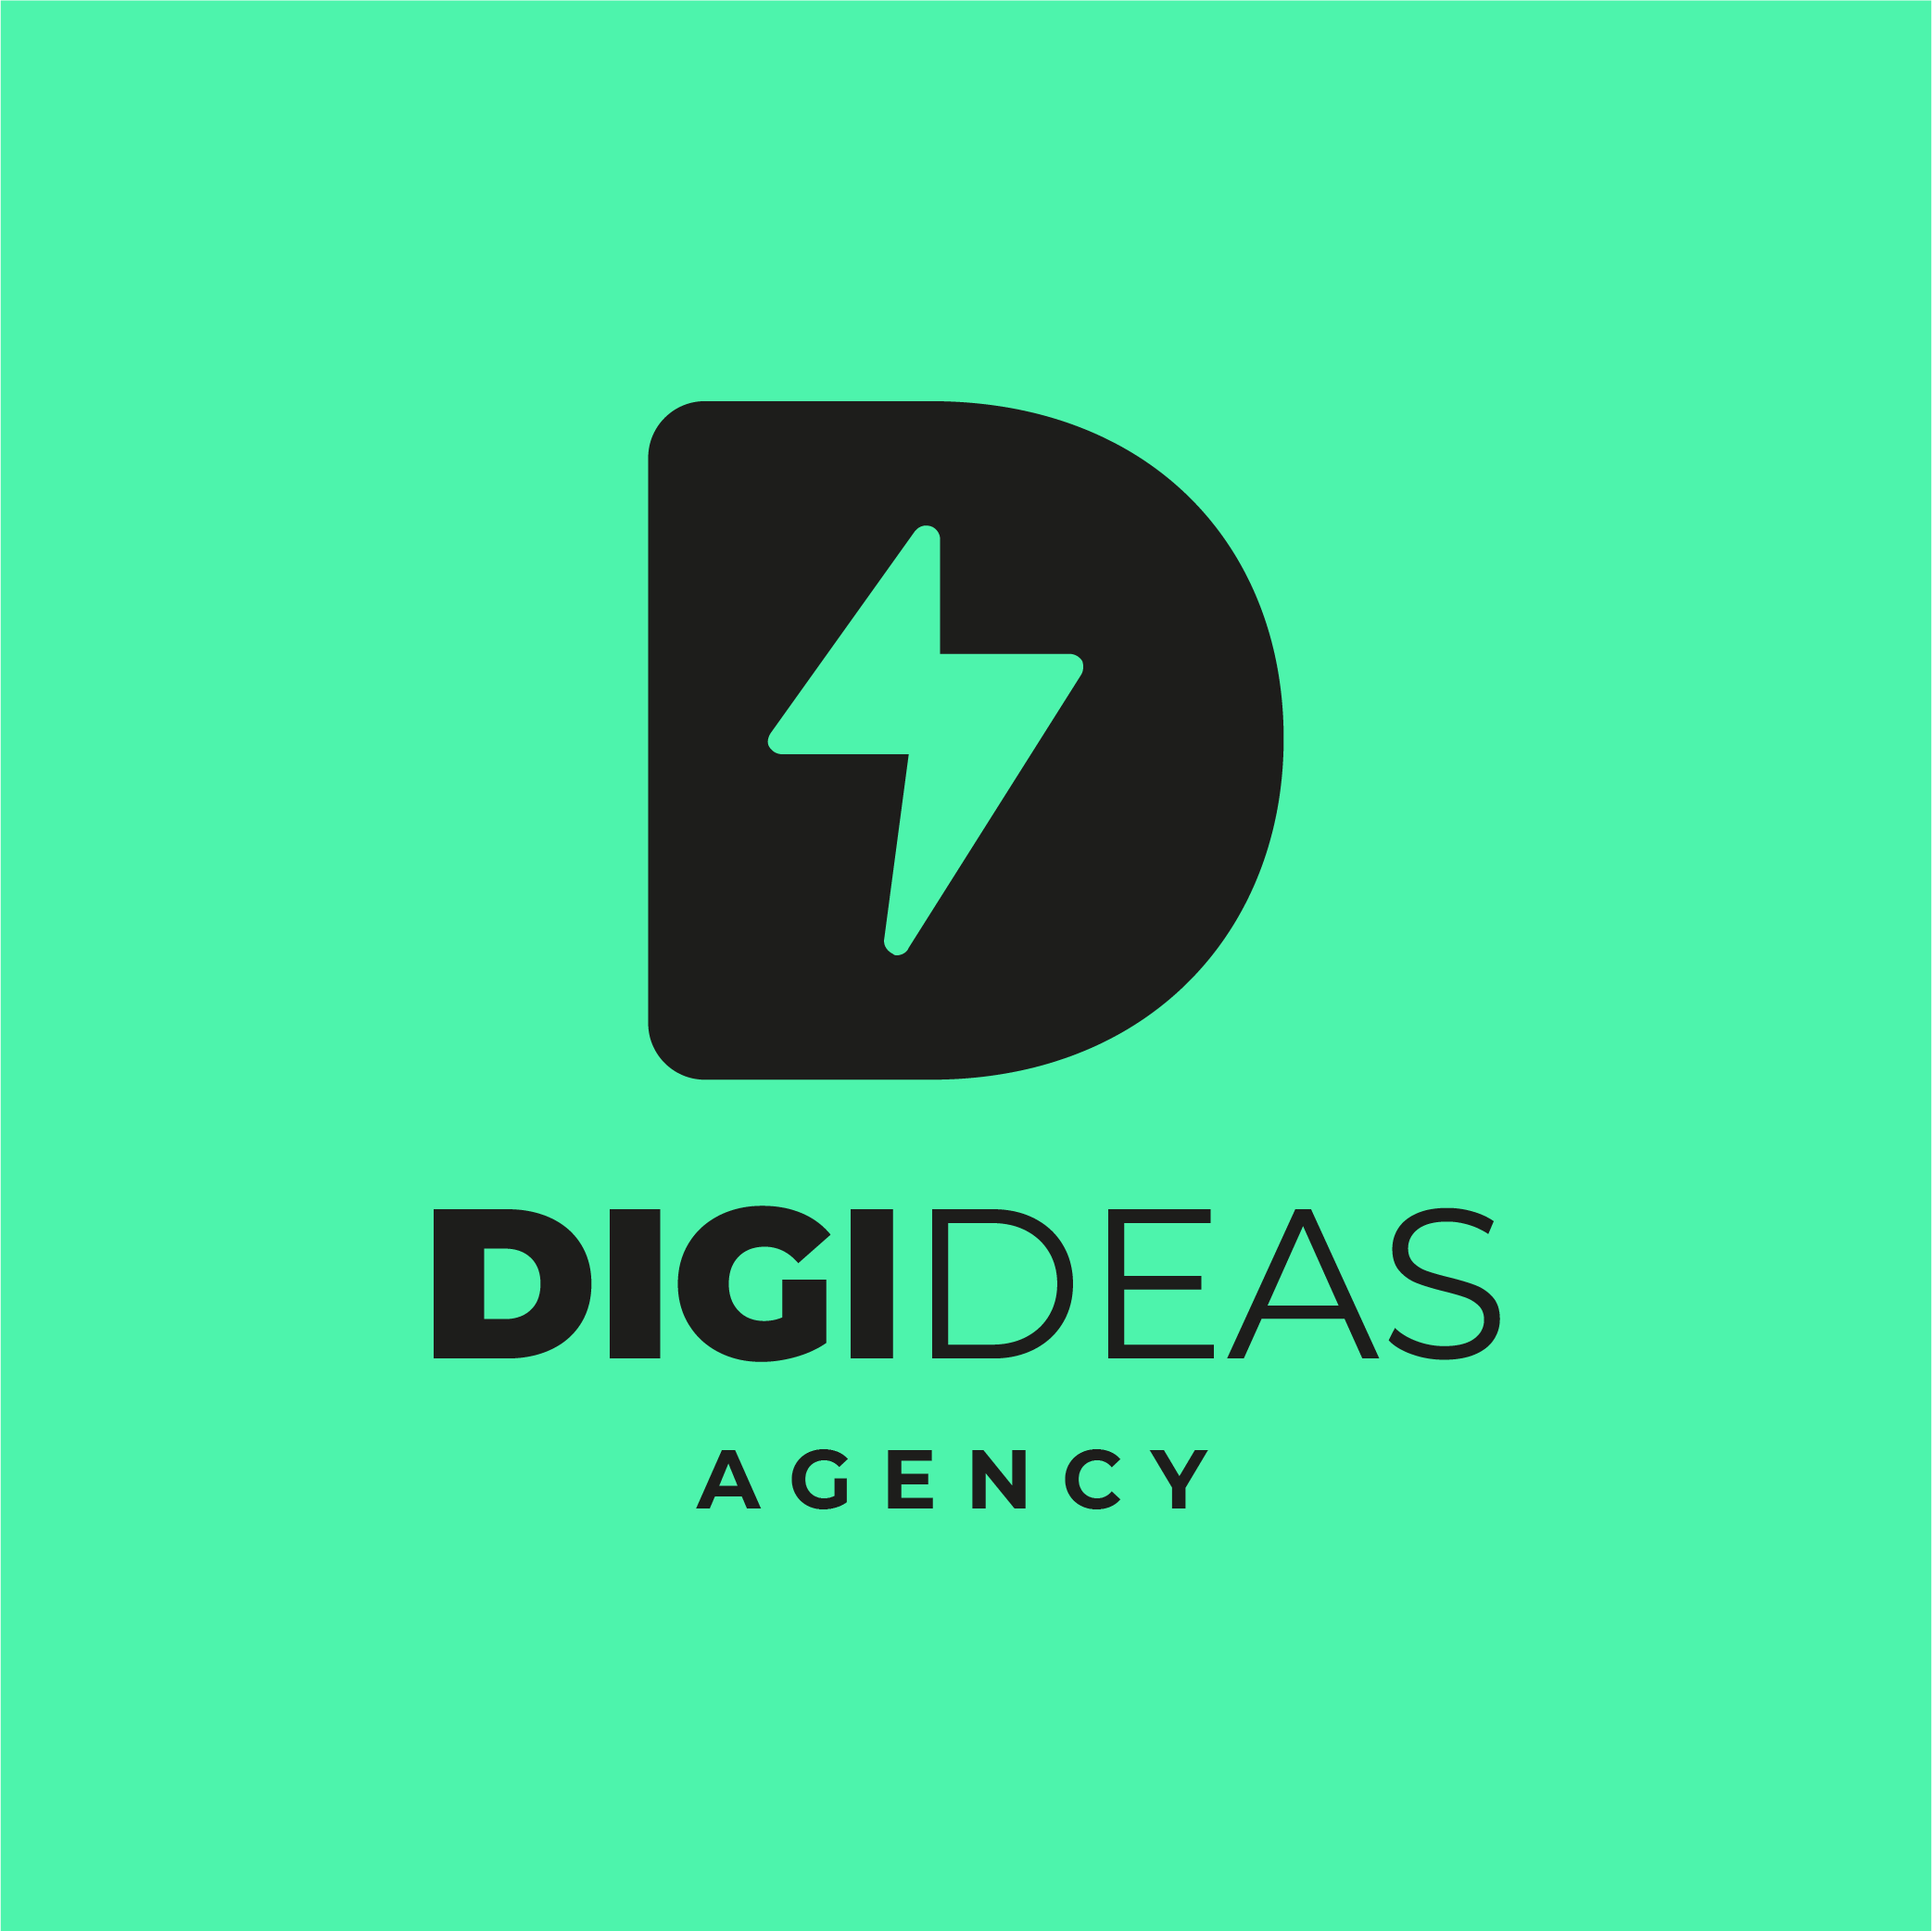 Digideas Agency